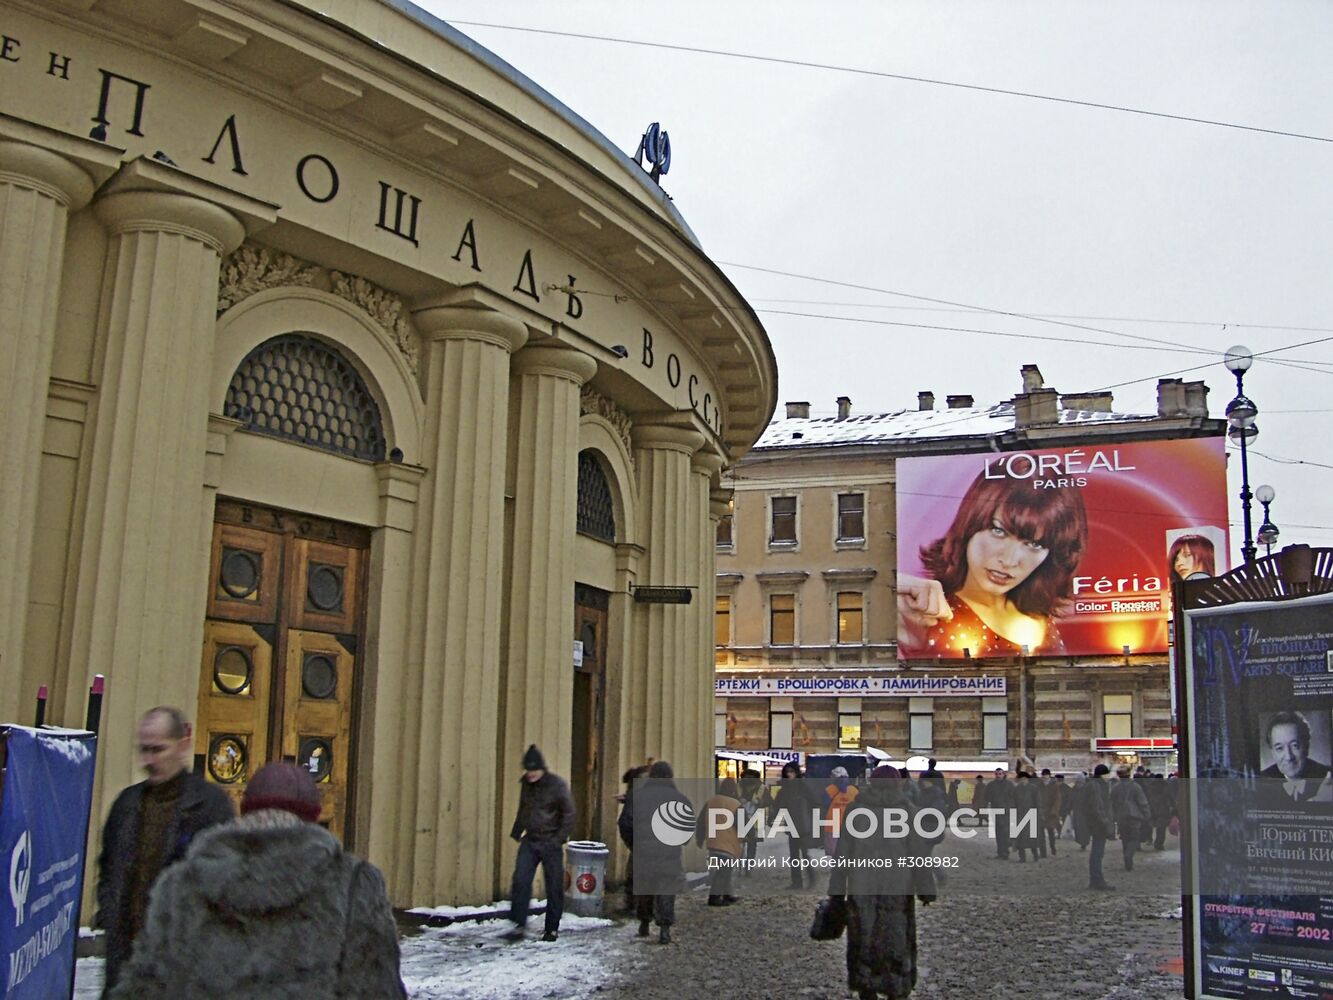 Метро "Площадь Восстания" в Санкт-Петербурге